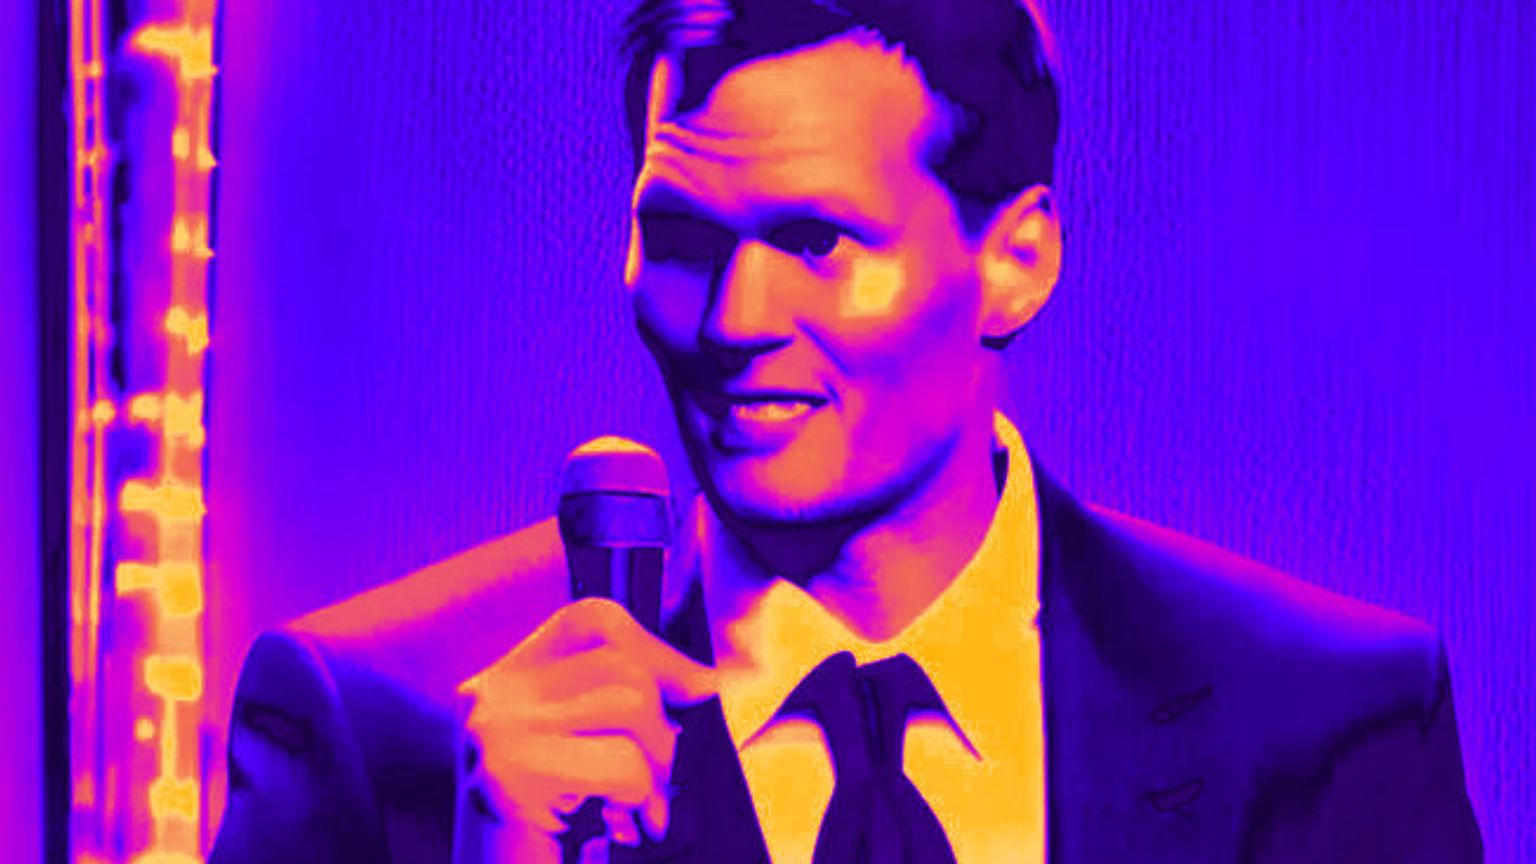 Tom Brady threatens to sue comedians over AI parody video